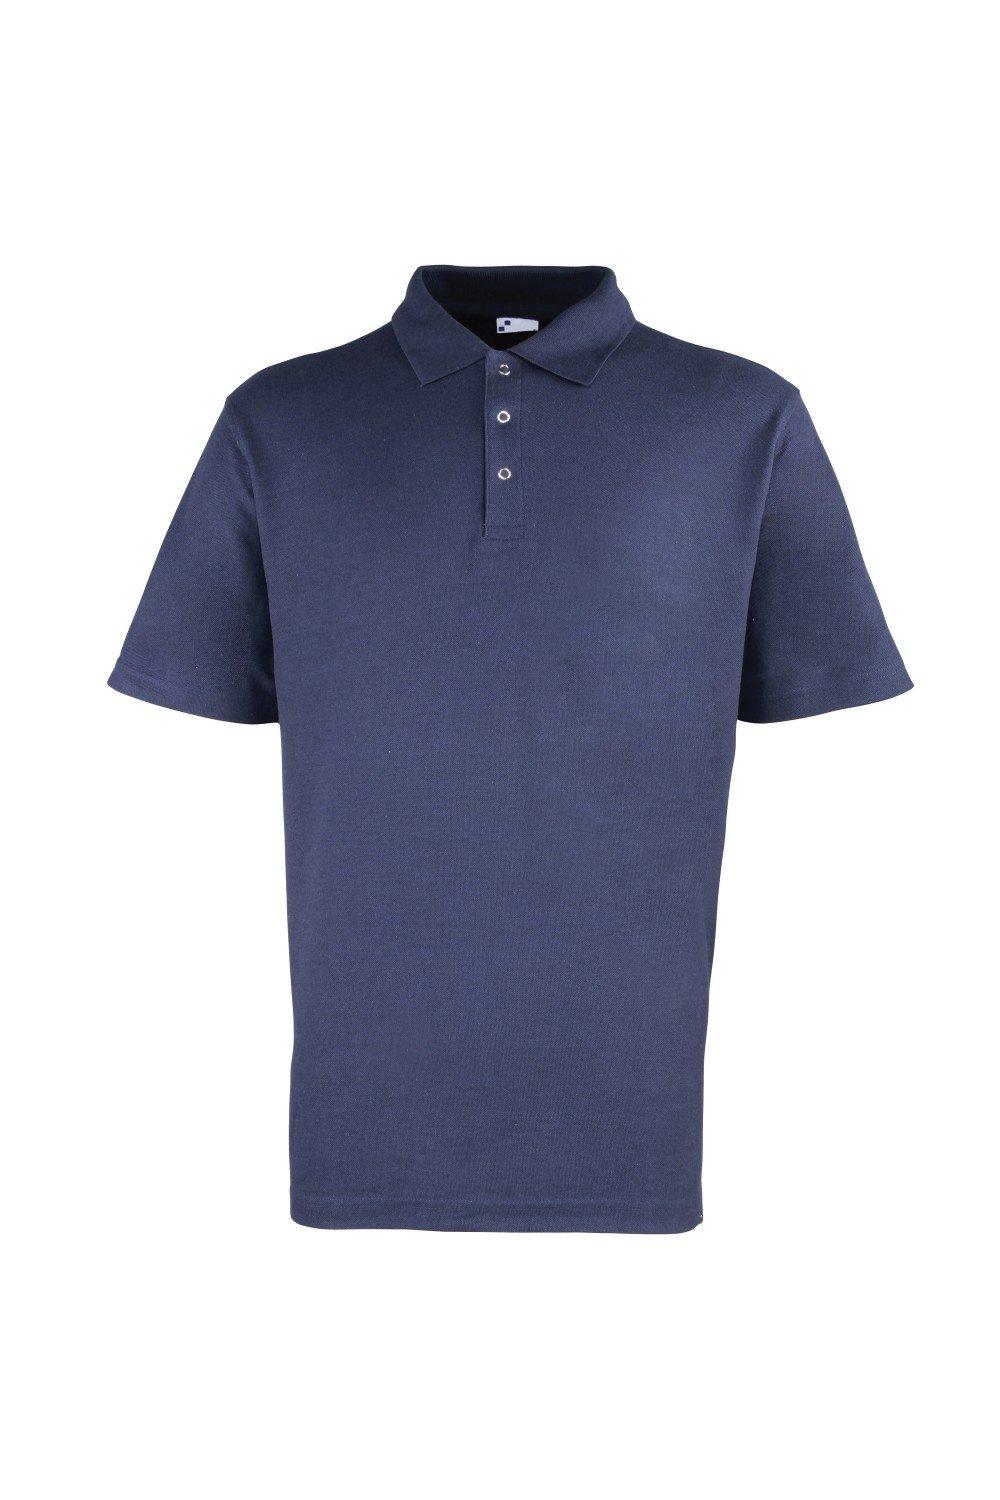 Однотонная рубашка-поло из тяжелого пике с заклепками Premier, темно-синий рубашка sol s размер xl красный